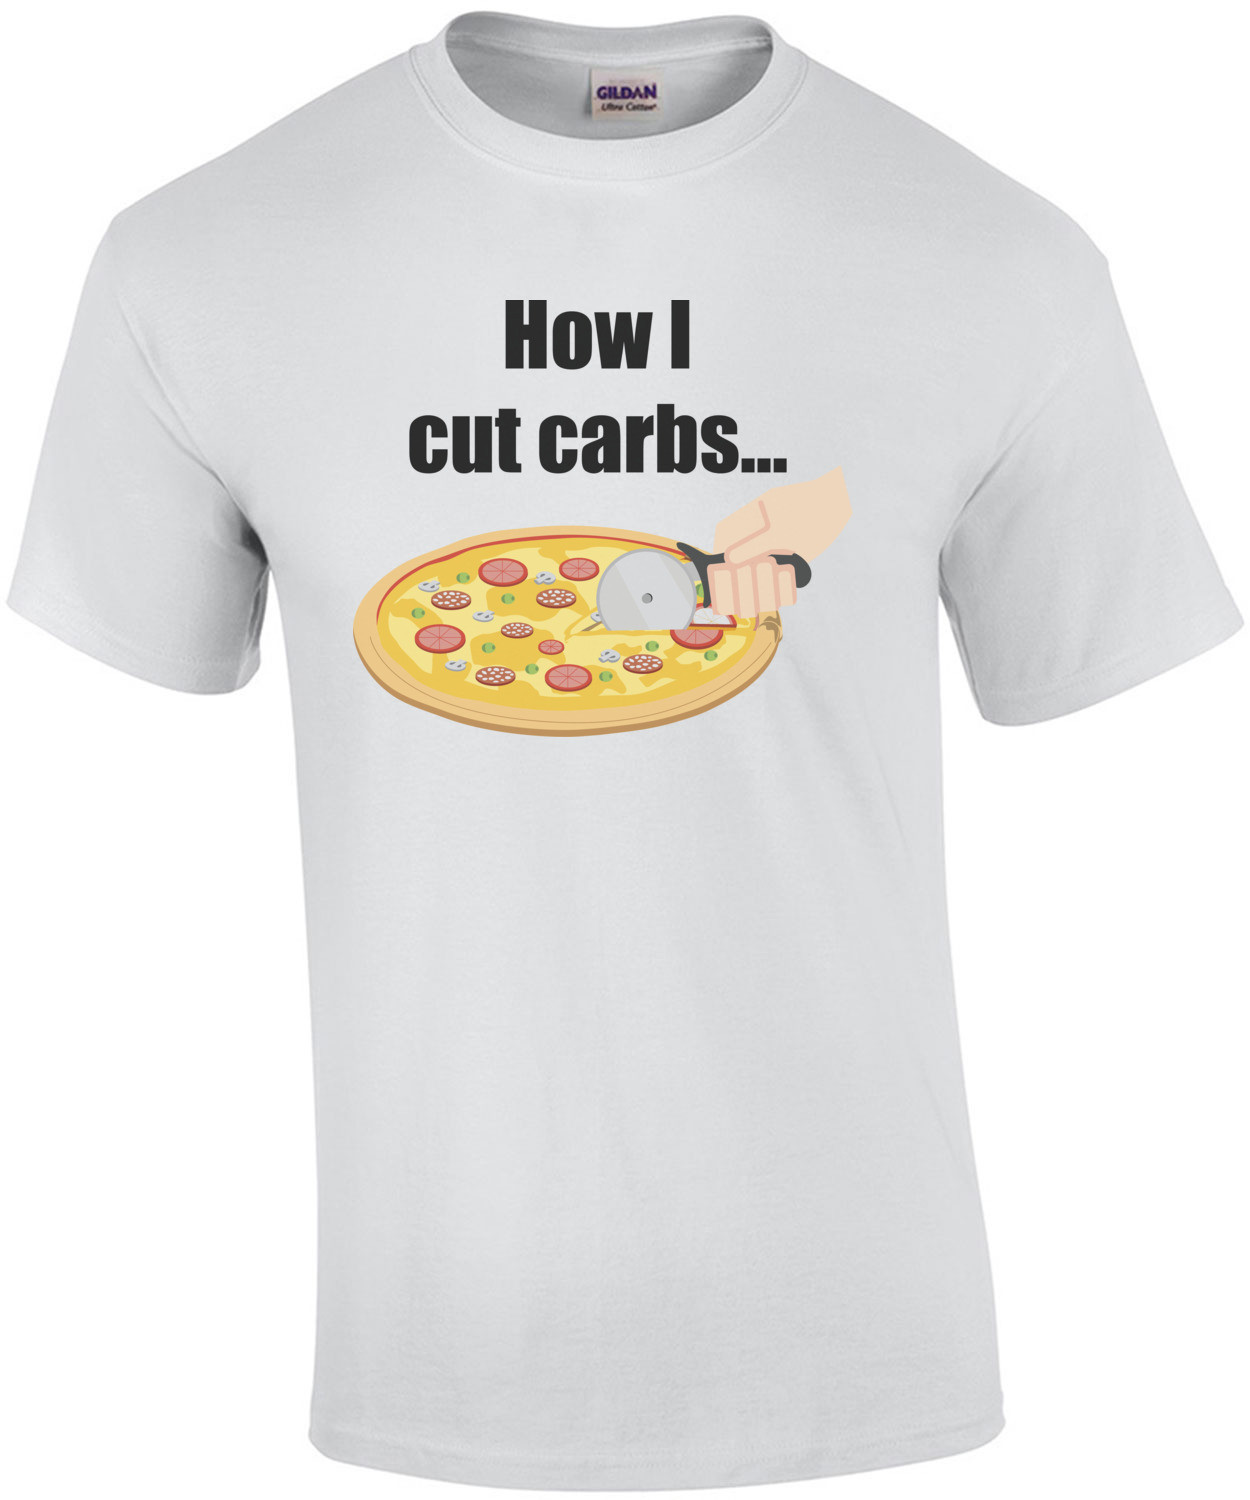 How I cut carbs...food t-shirt